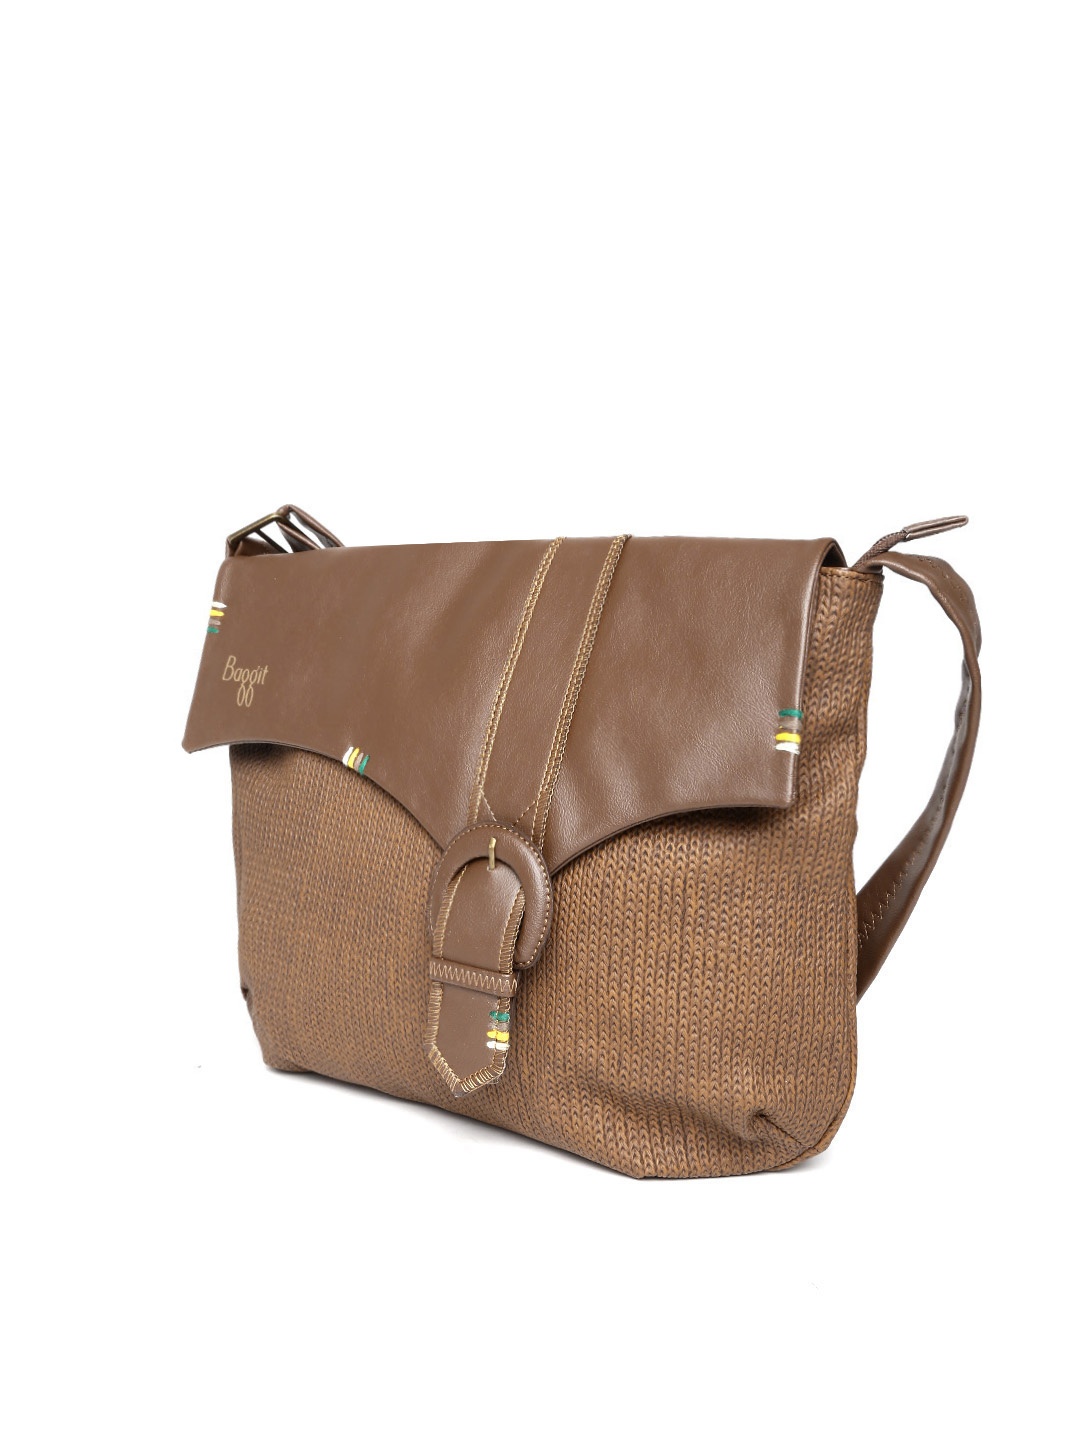 Myntra Baggit Brown Sling Bag 700179 | Buy Myntra Baggit Handbags at best price online. All ...